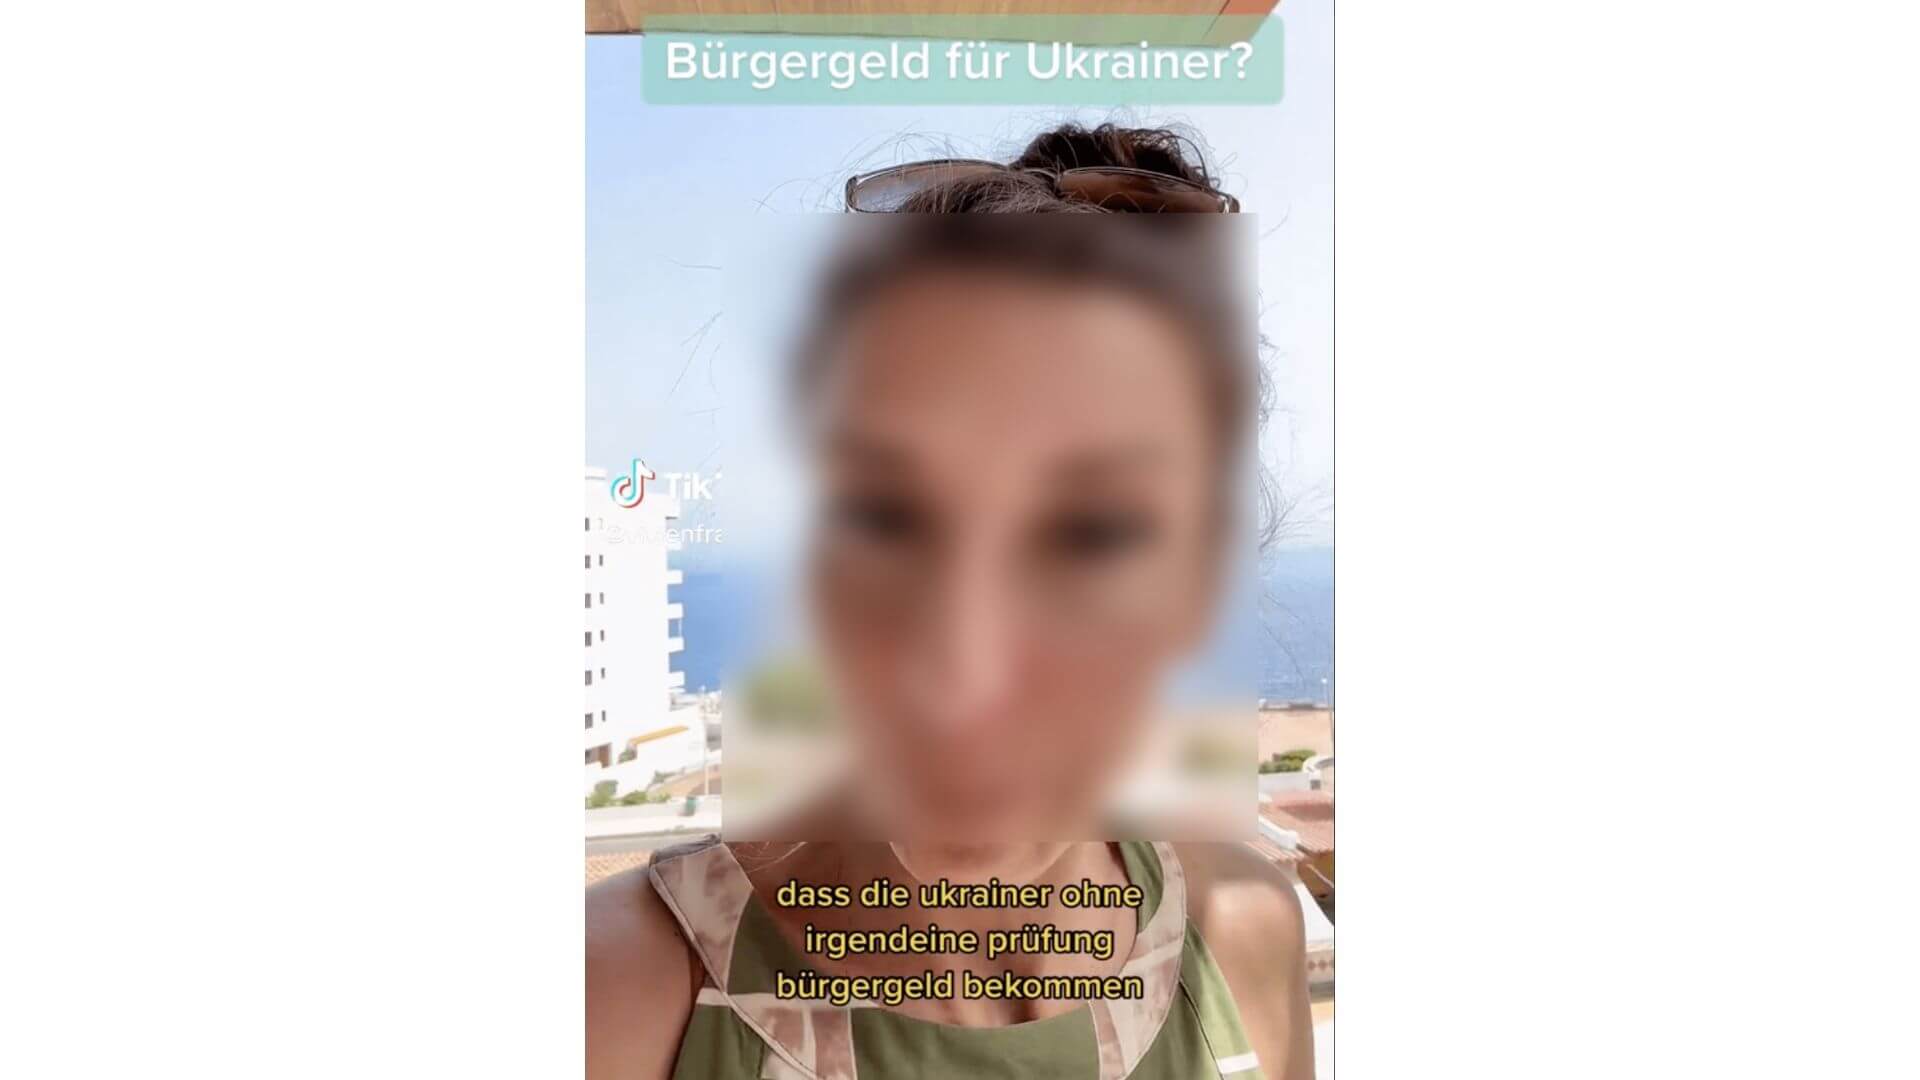 Die Tiktokerin „Vivienfragt“ verbreitet irreführende Informationen über Ukrainerinnen und Ukrainer